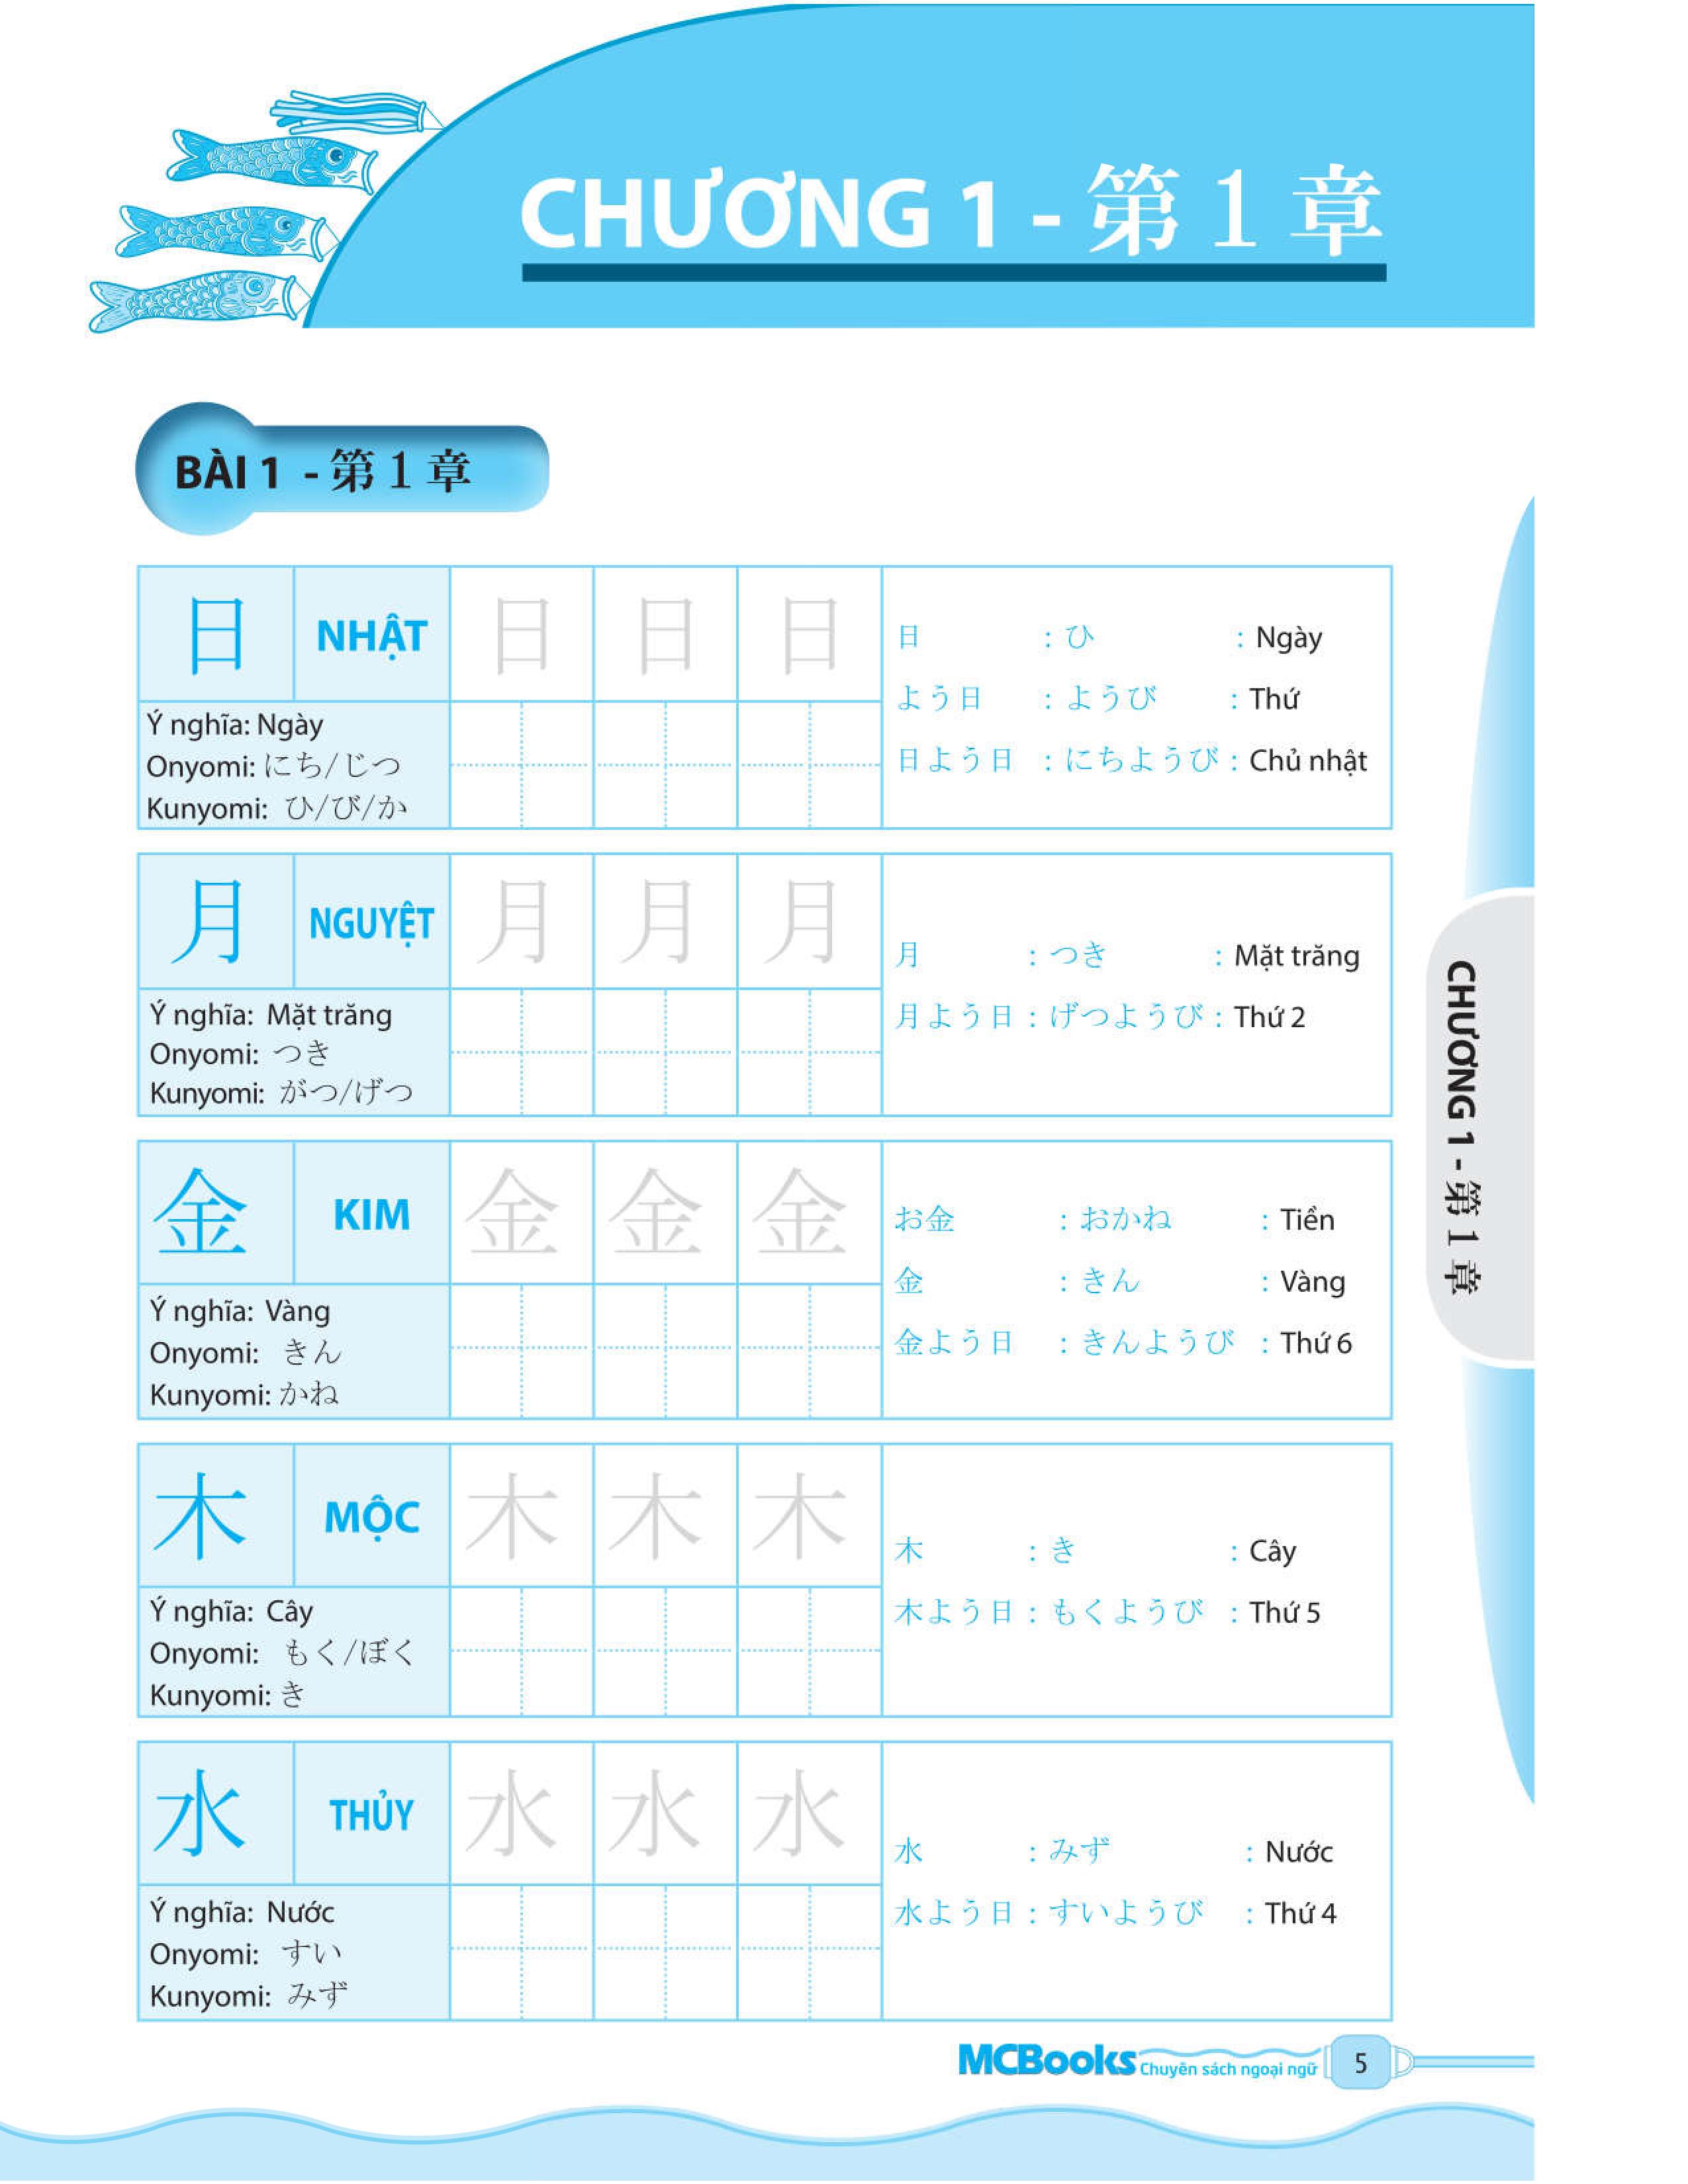 Tự Học 600 Chữ Kanji Căn Bản PDF